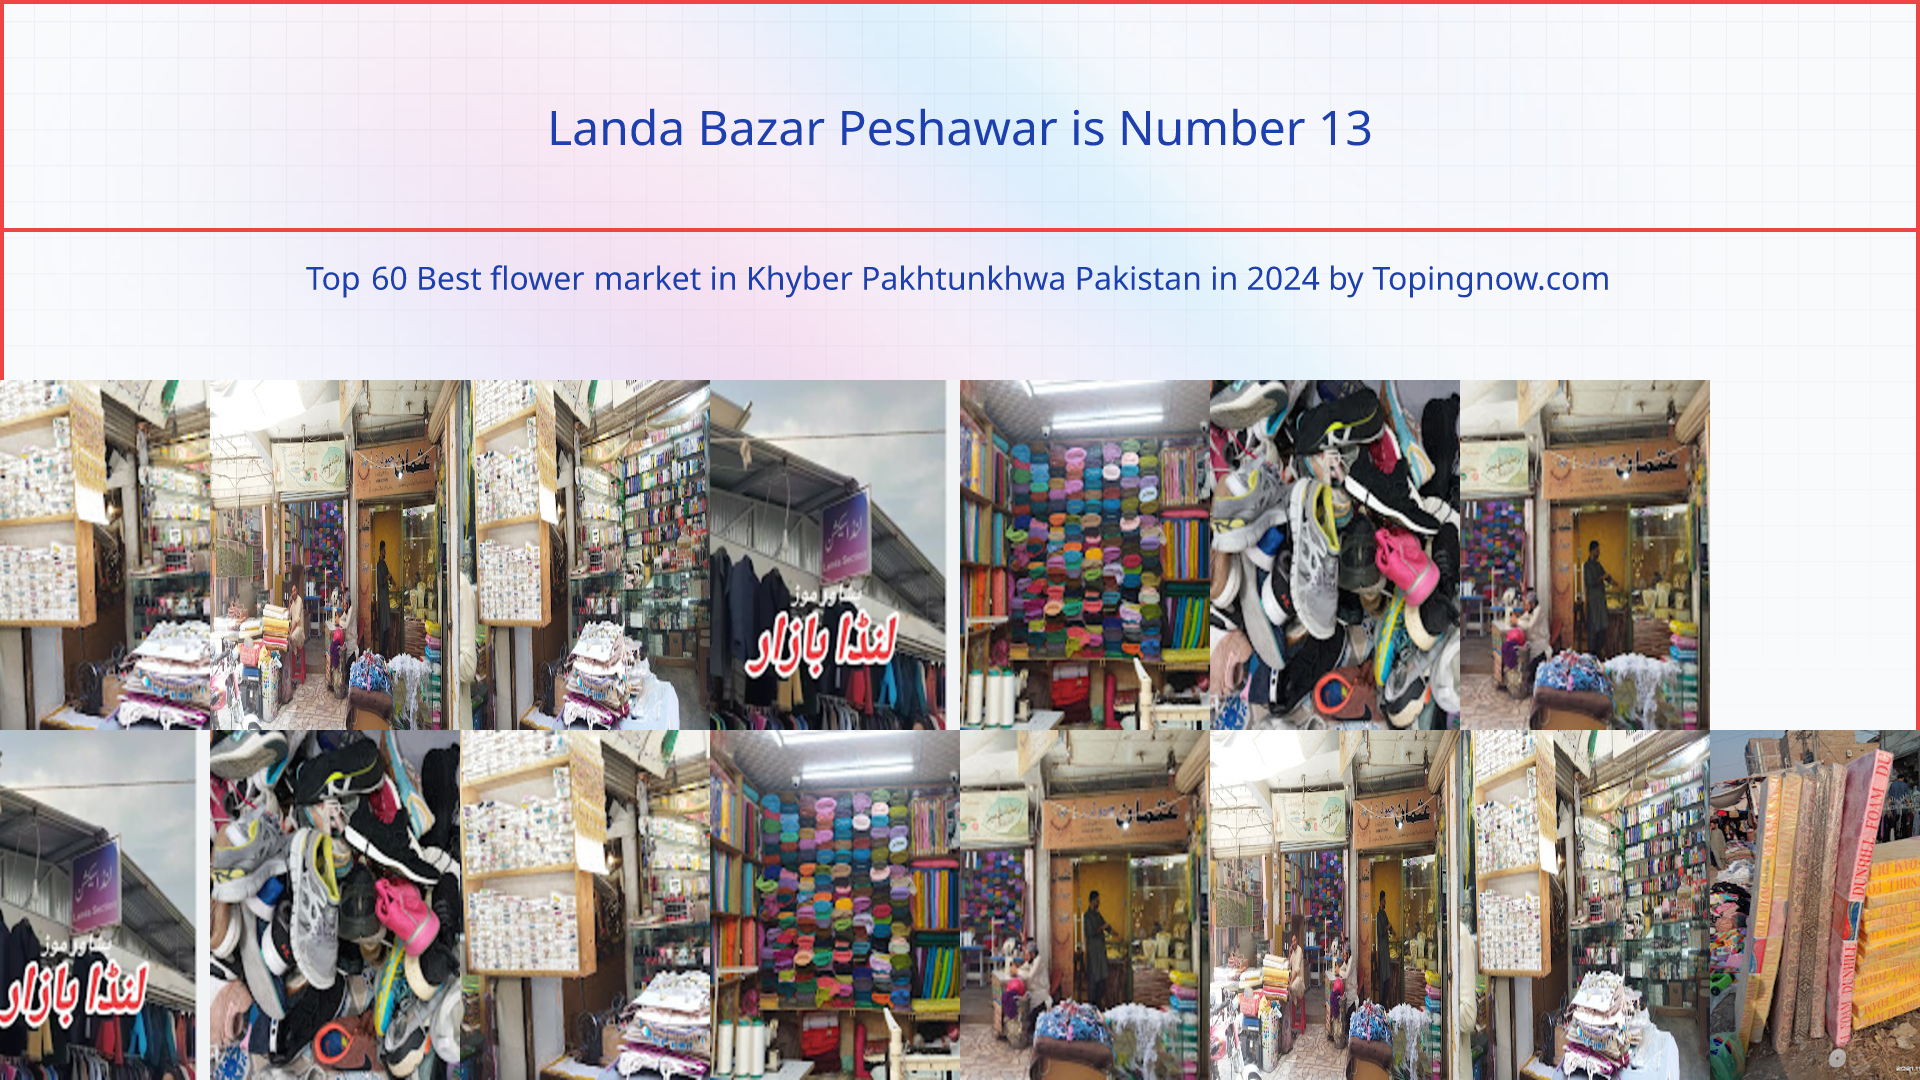 Landa Bazar Peshawar: Top 60 Best flower market in Khyber Pakhtunkhwa Pakistan in 2024